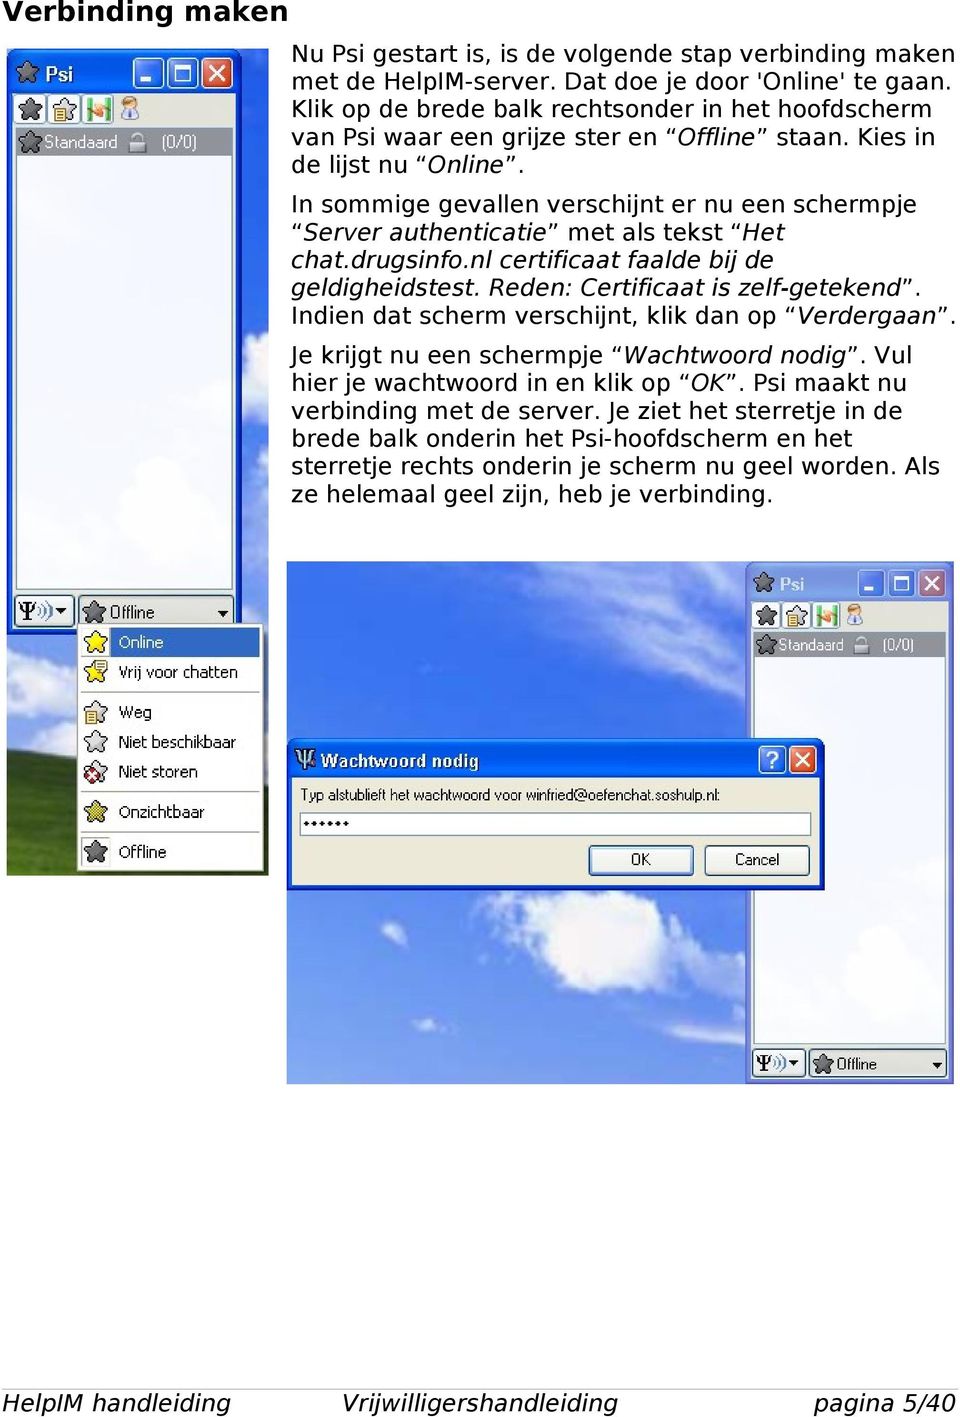 In sommige gevallen verschijnt er nu een schermpje Server authenticatie met als tekst Het chat.drugsinfo.nl certificaat faalde bij de geldigheidstest. Reden: Certificaat is zelf-getekend.